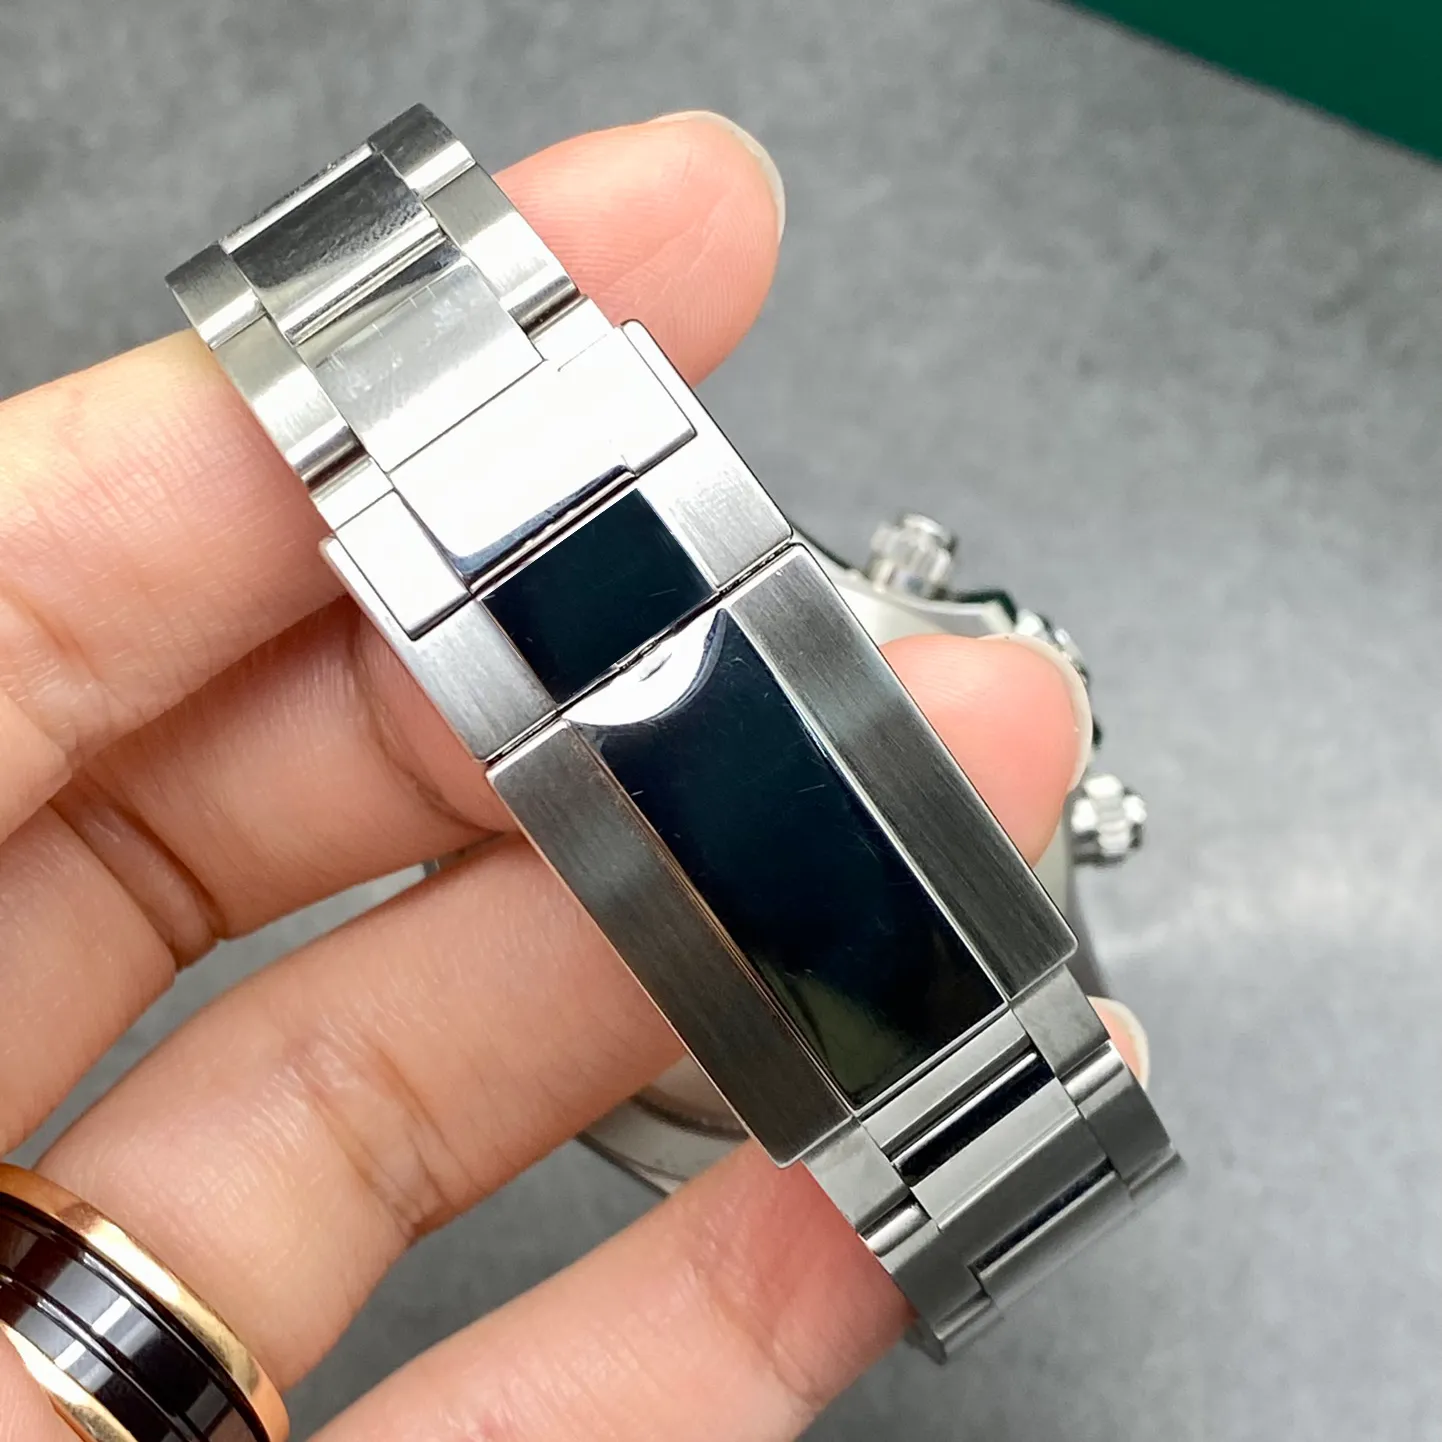 VK Chronograph Stahl und Keramik Uhrenbox Zertifikat 116500 Weiße Keramik Panda 40mm Uhren Automatik Mechanisch Herren180L